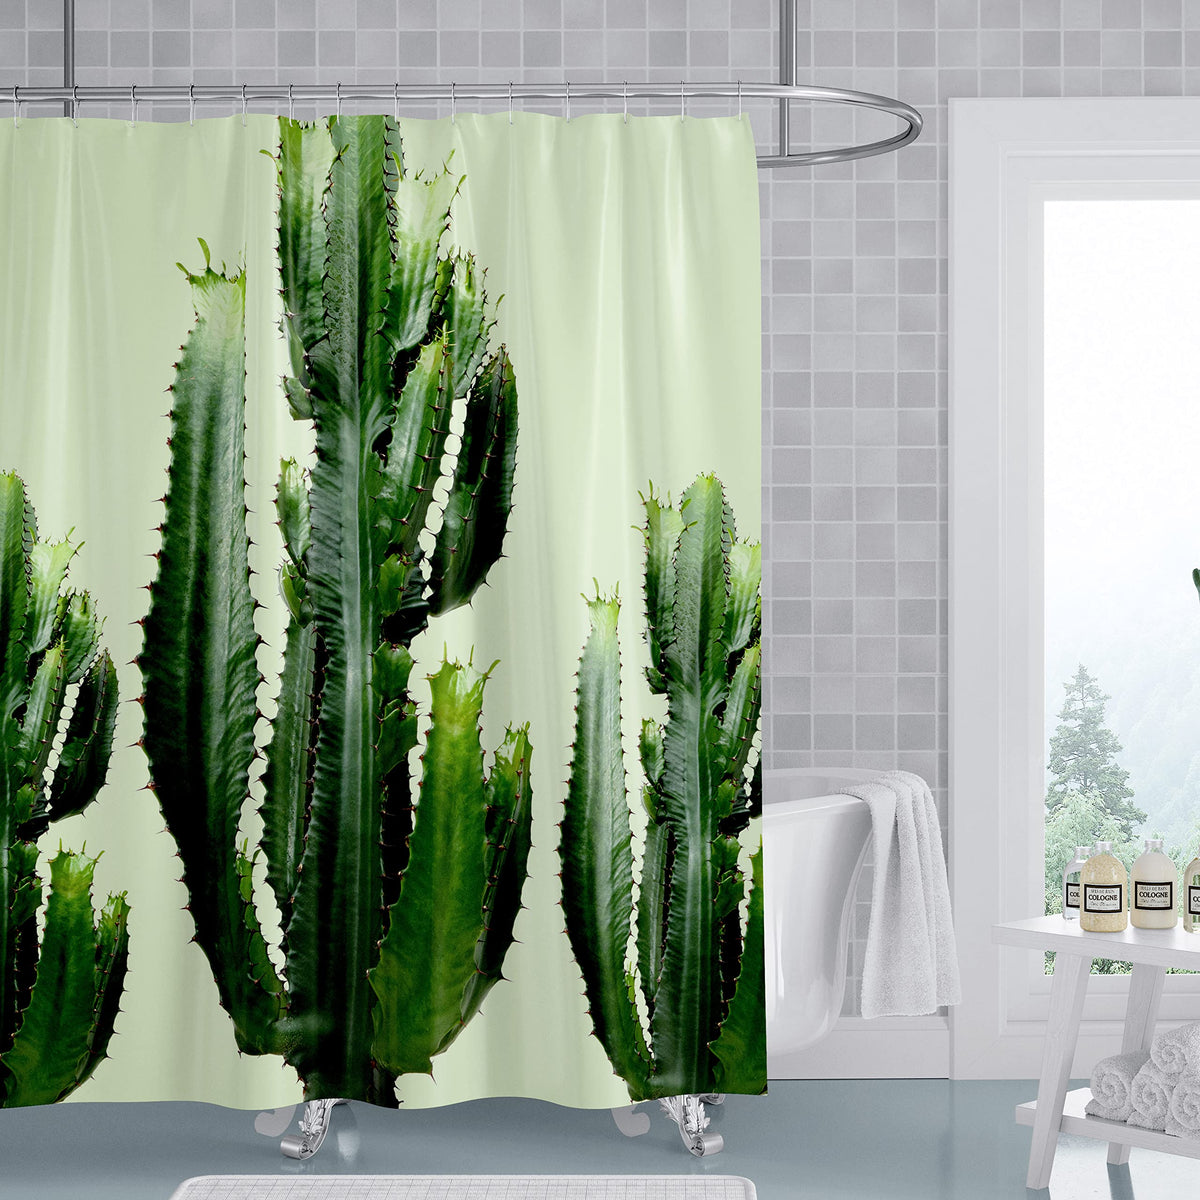 Beddinginn Cactus Plant Shower Curtains, Waterproof Green Plant Shower Curtains Nature Theme Modern Shower Curtain for Bathroom Decor, 71*71 Inches